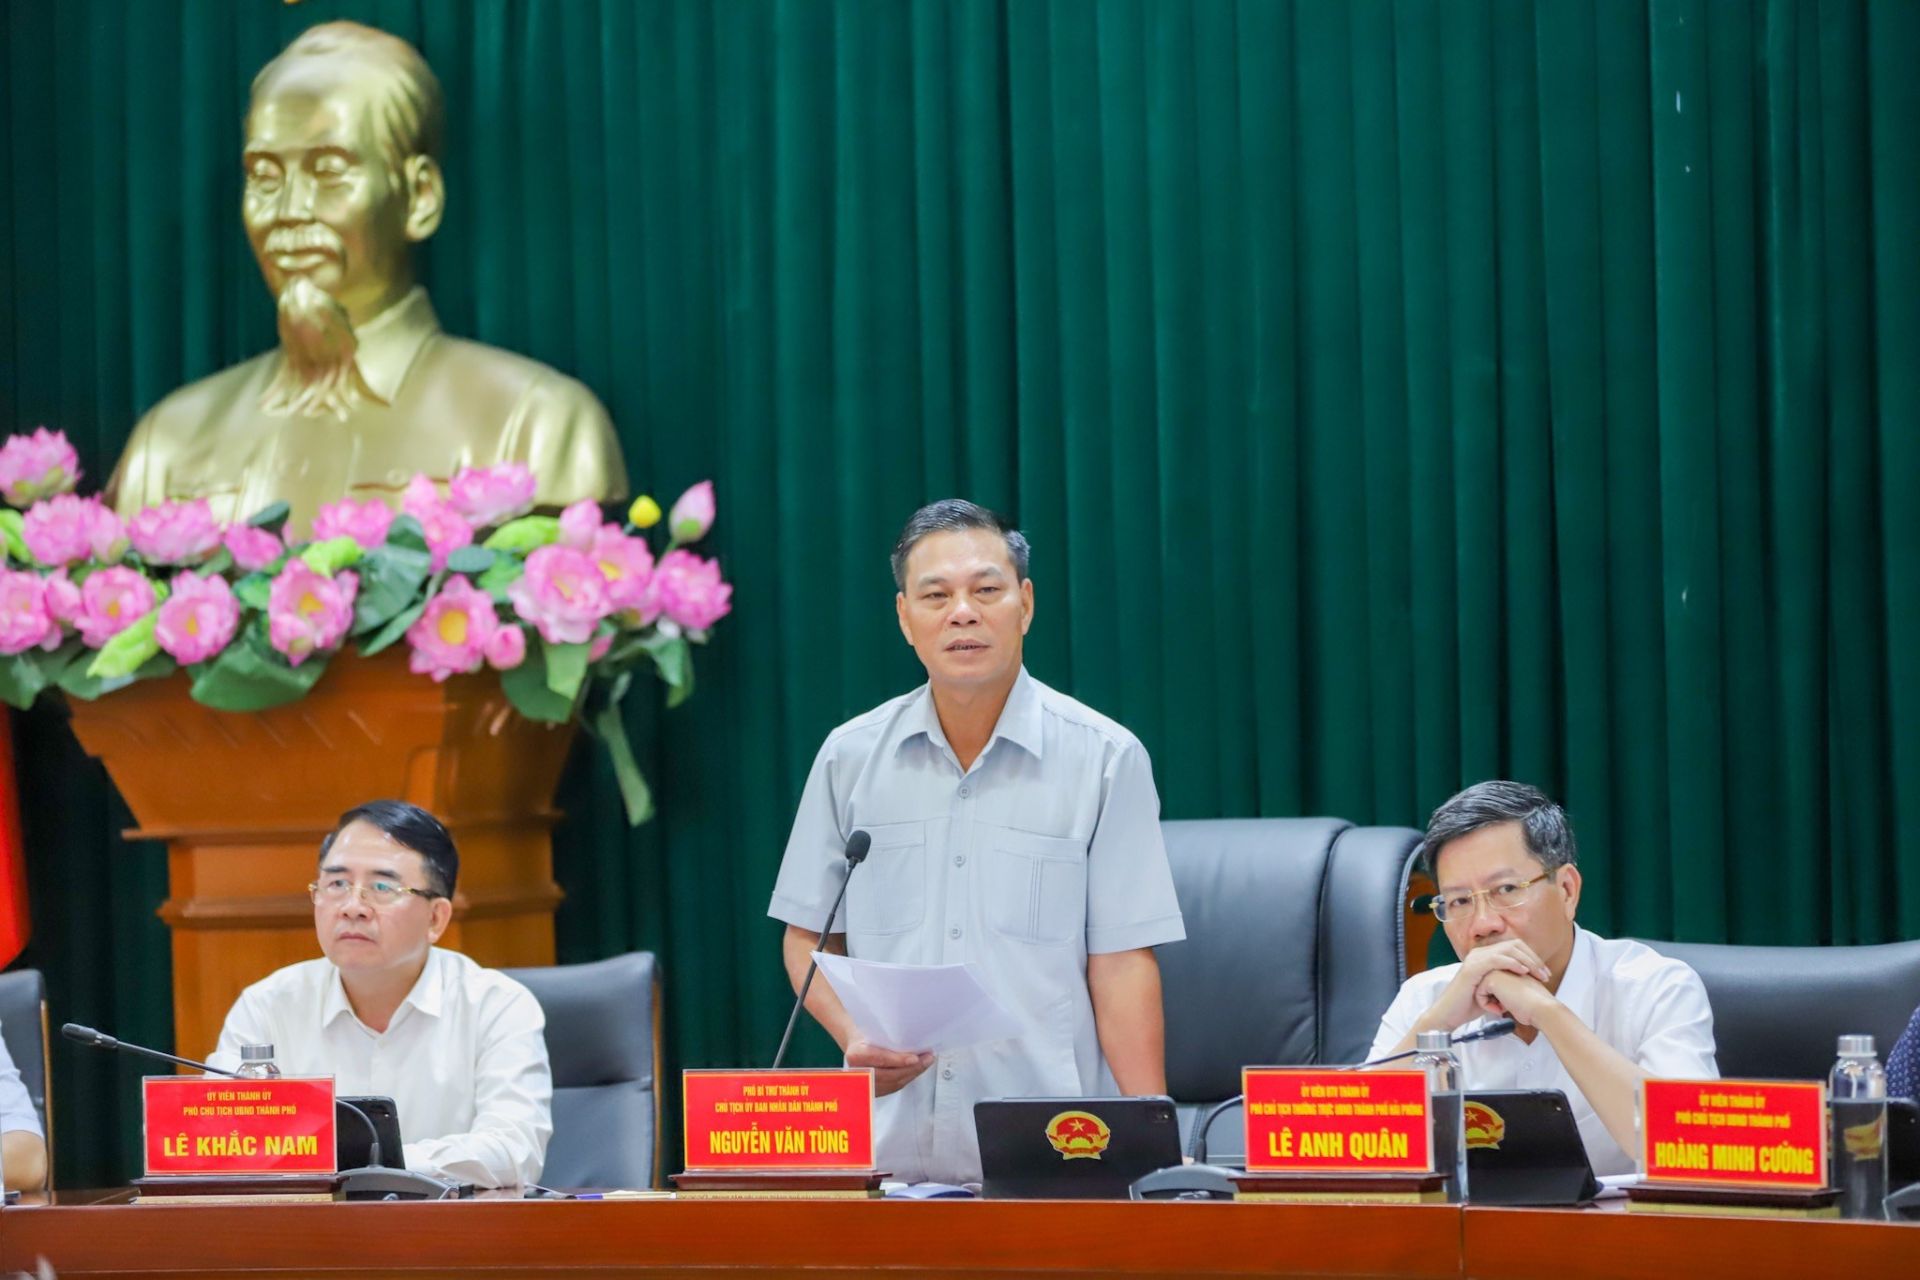 Chủ tịch UBND thành phố Nguyễn Văn Tùng phát biểu tại buổi họp